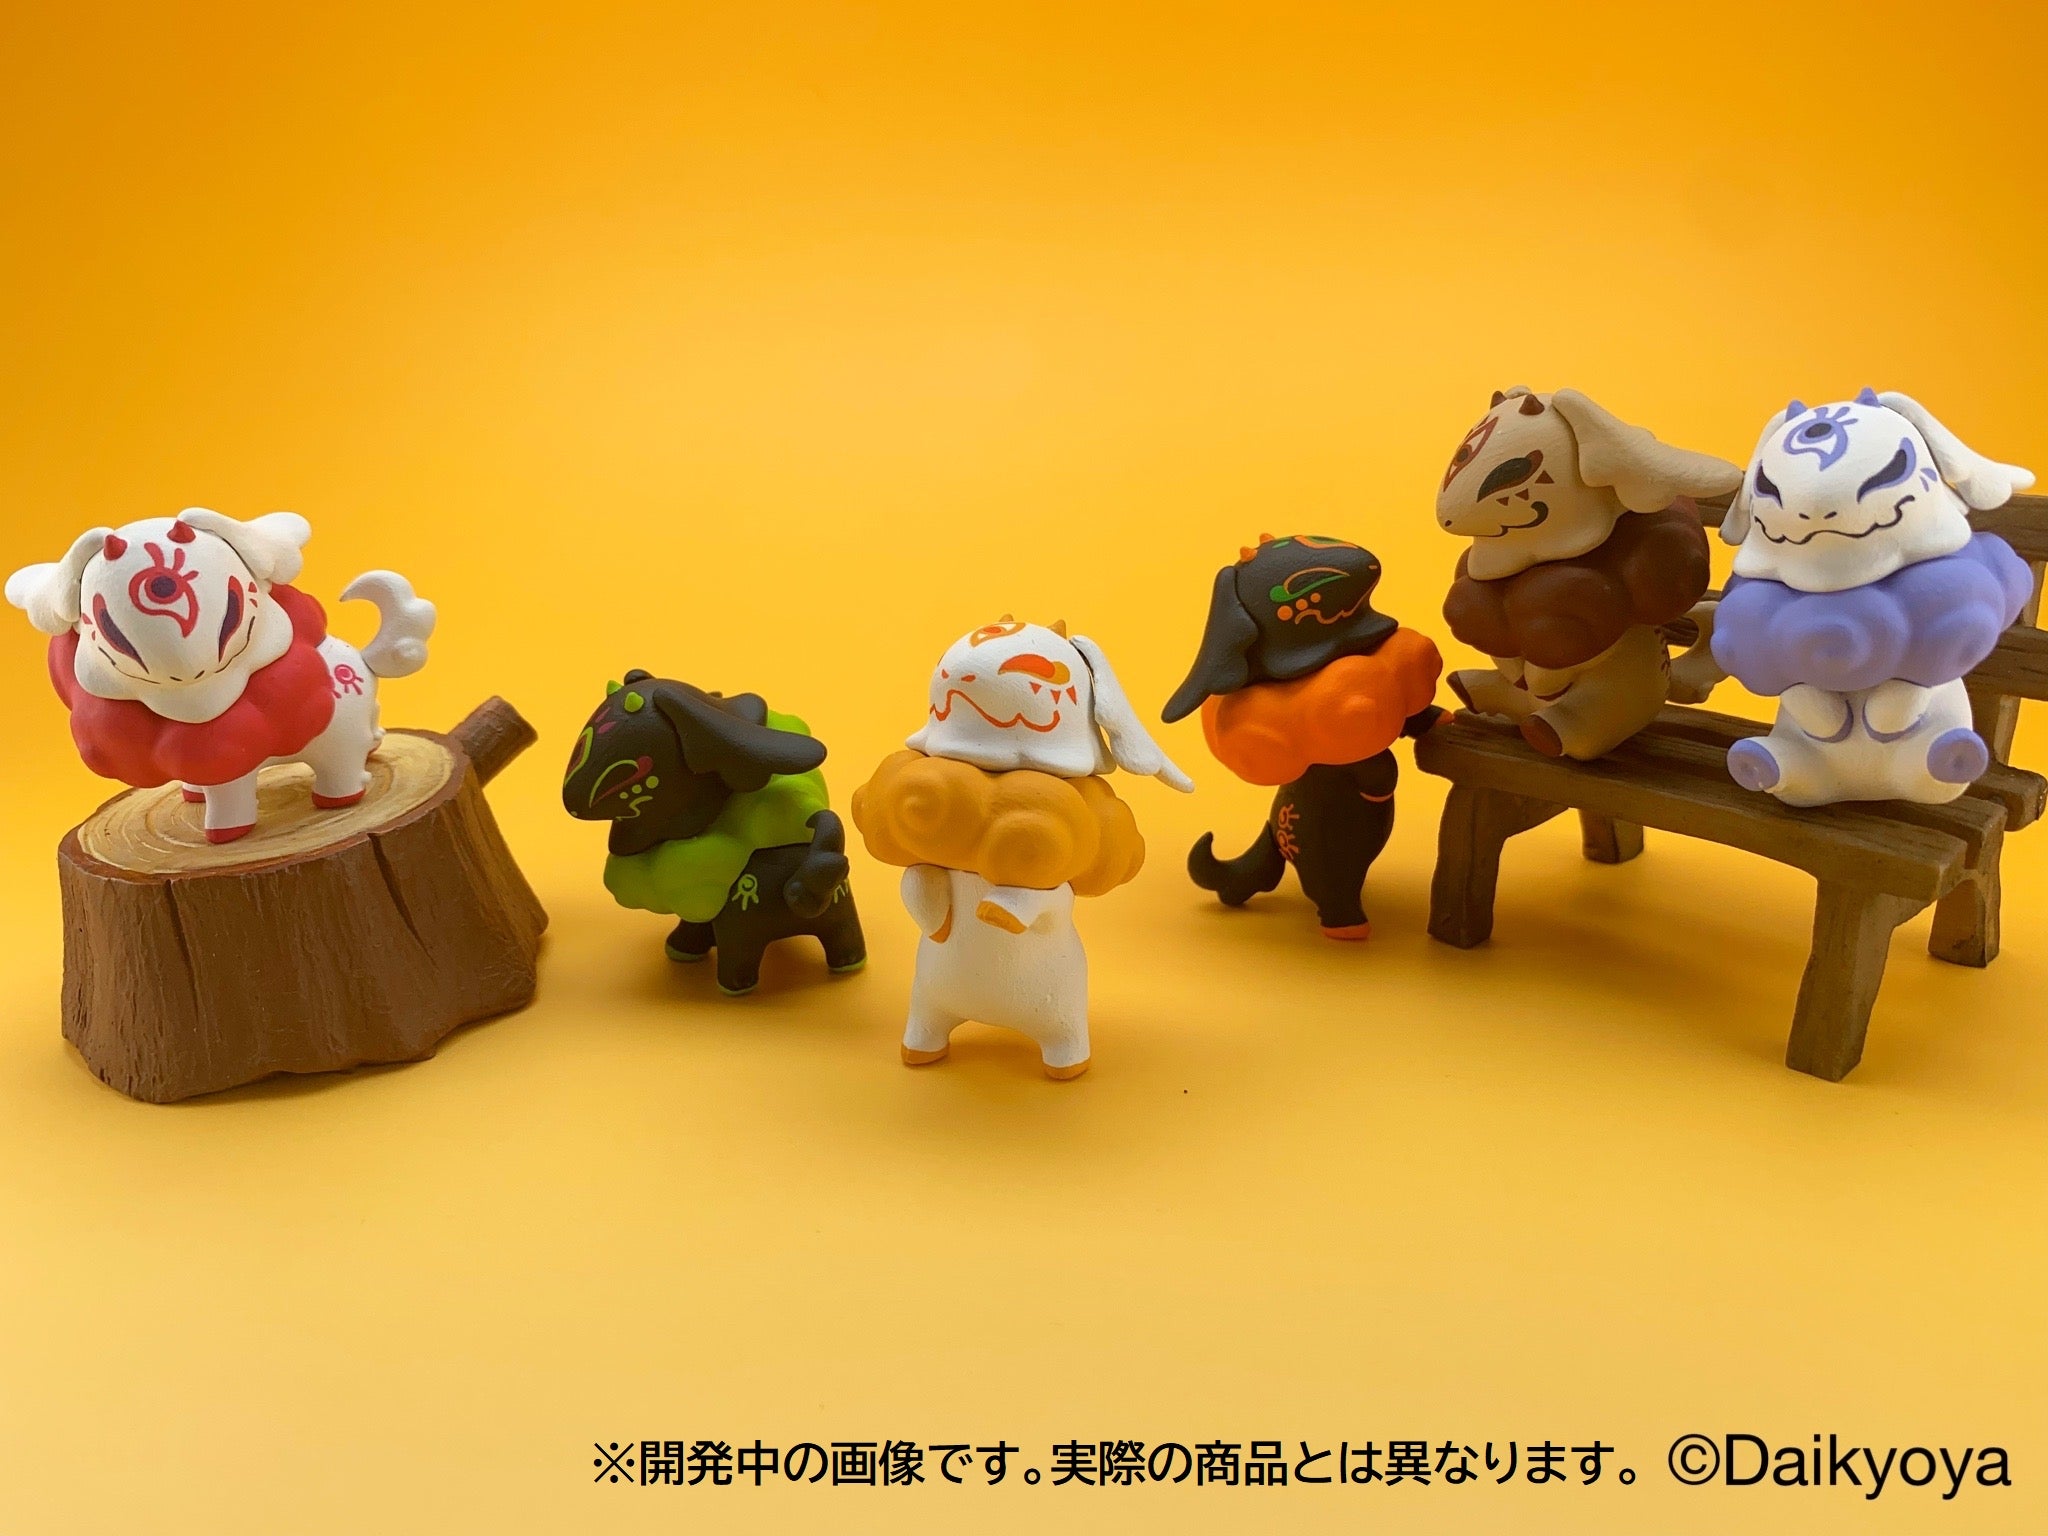 Daikyoya Collection Fluffy Child's hakutaku Gatcha Series